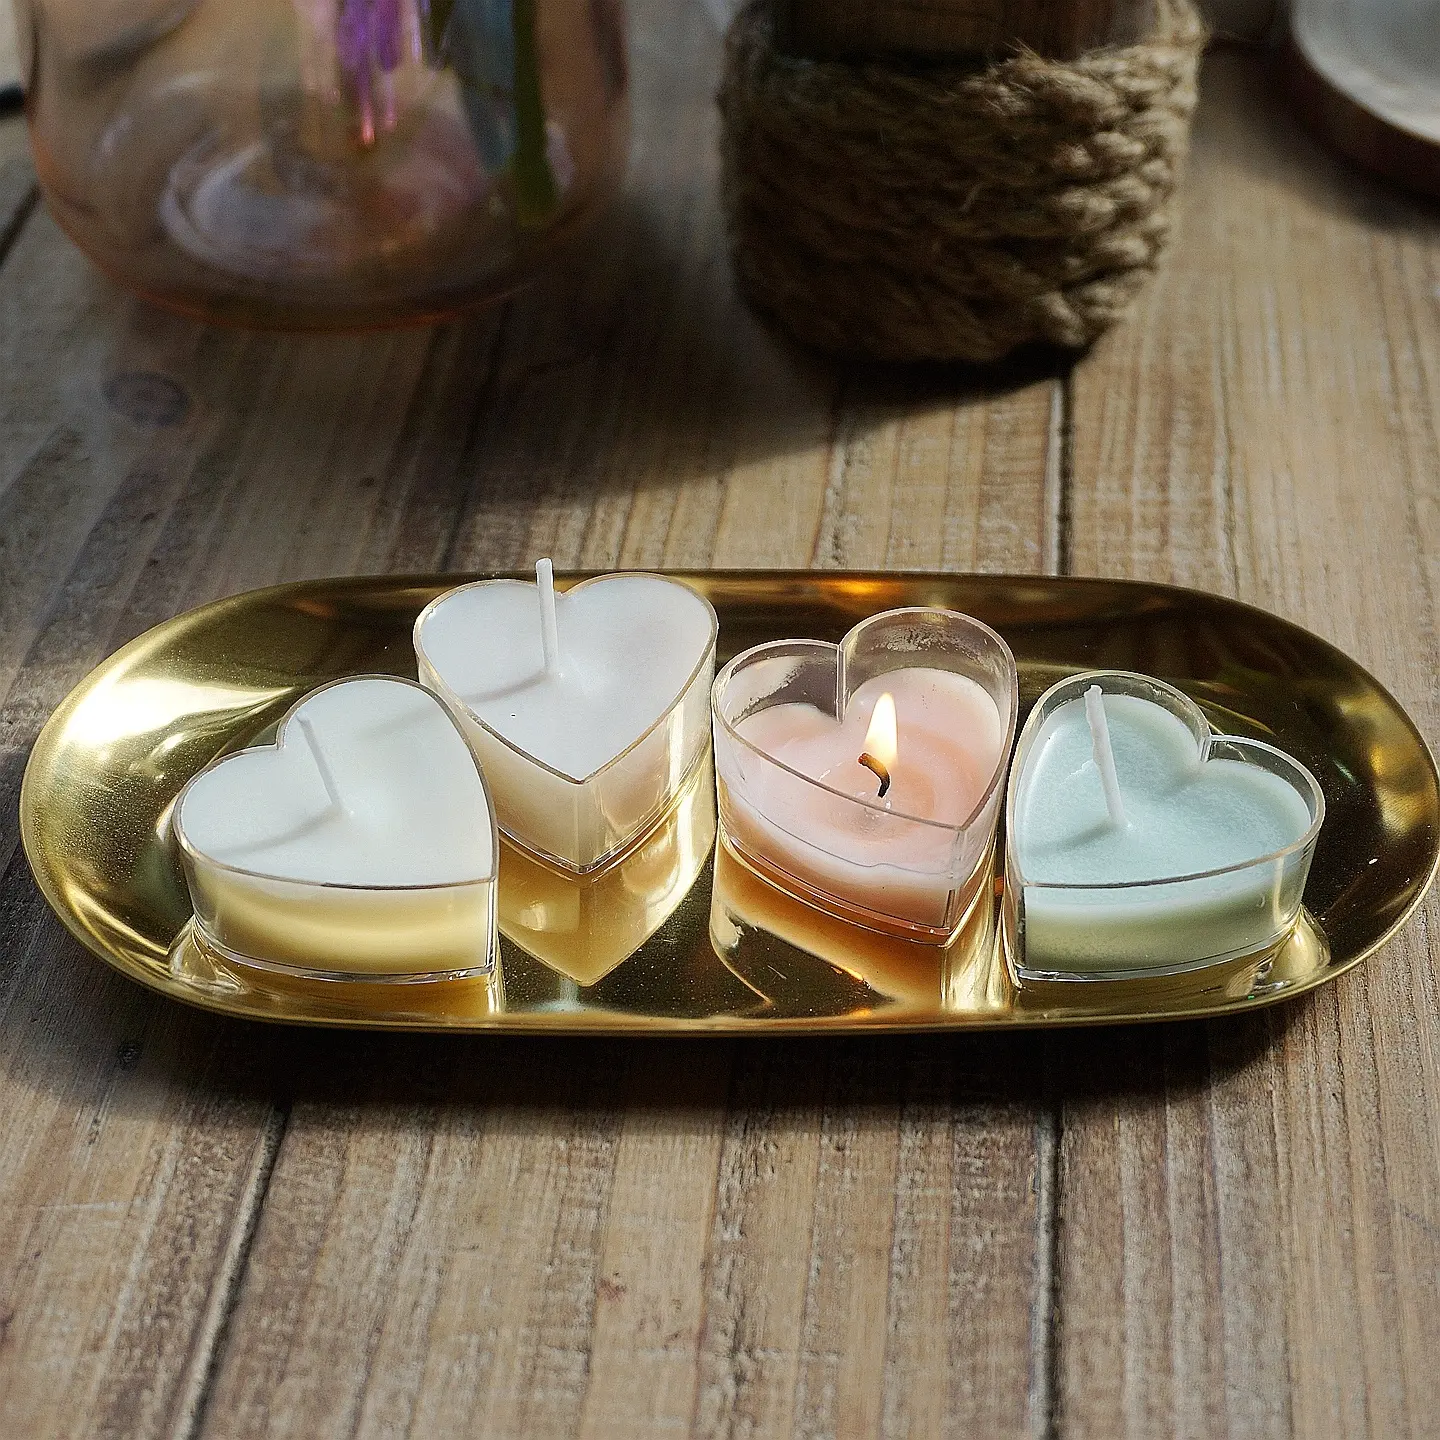 Jantung Shapedpolycarbonate Tealight Terus/Tealight Cangkir Lilin Cetakan Jelly Gel Lilin Wadah Membuat Cetakan Kerajinan Buatan Tangan Cetakan